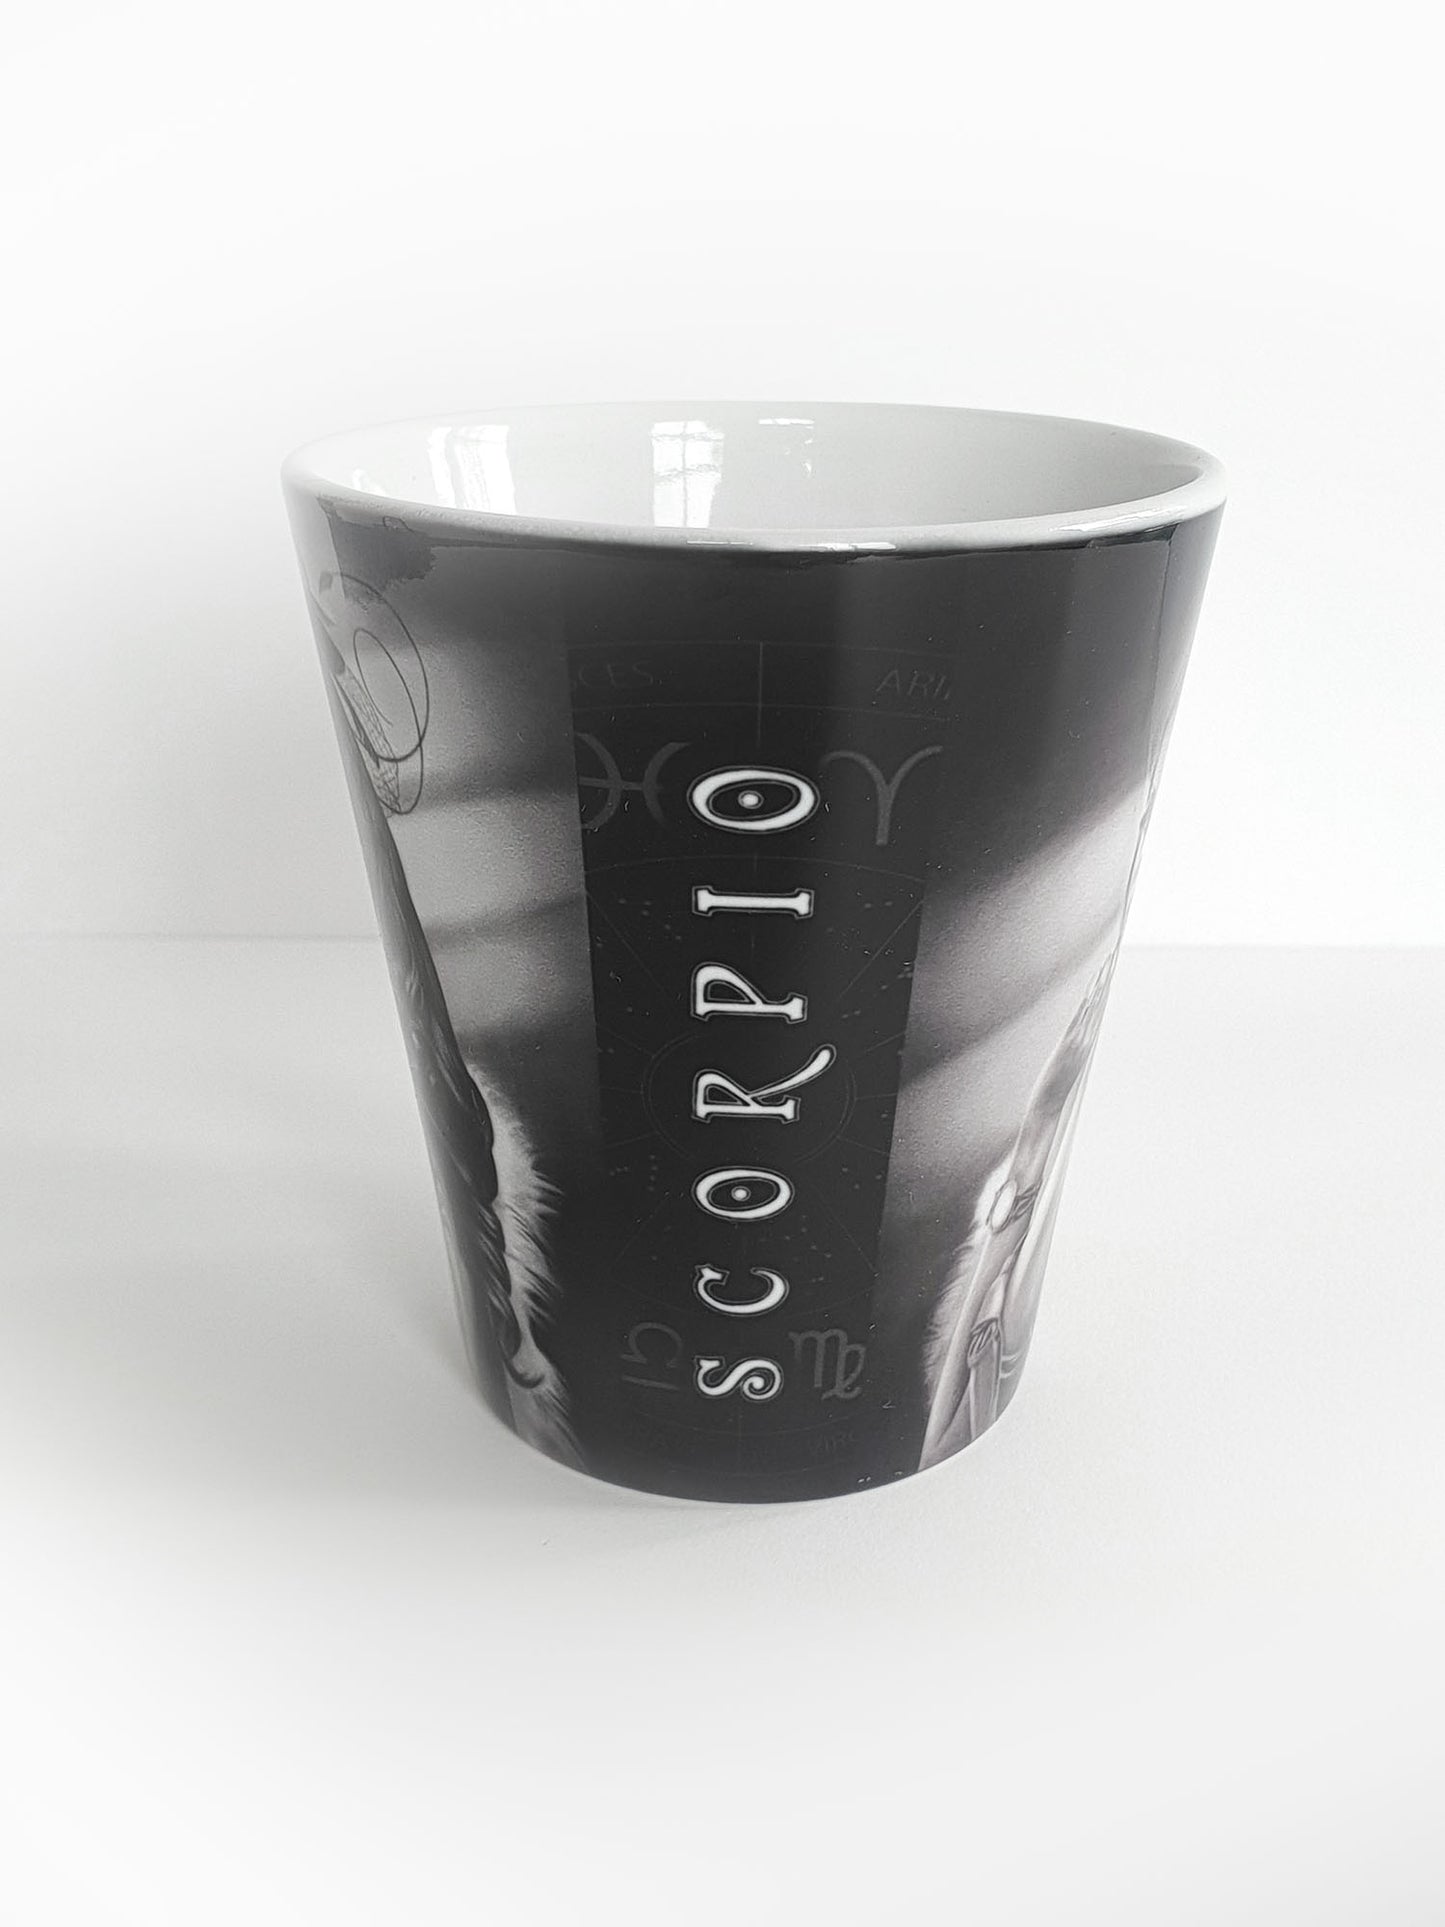 'Scorpio' ceramic mug